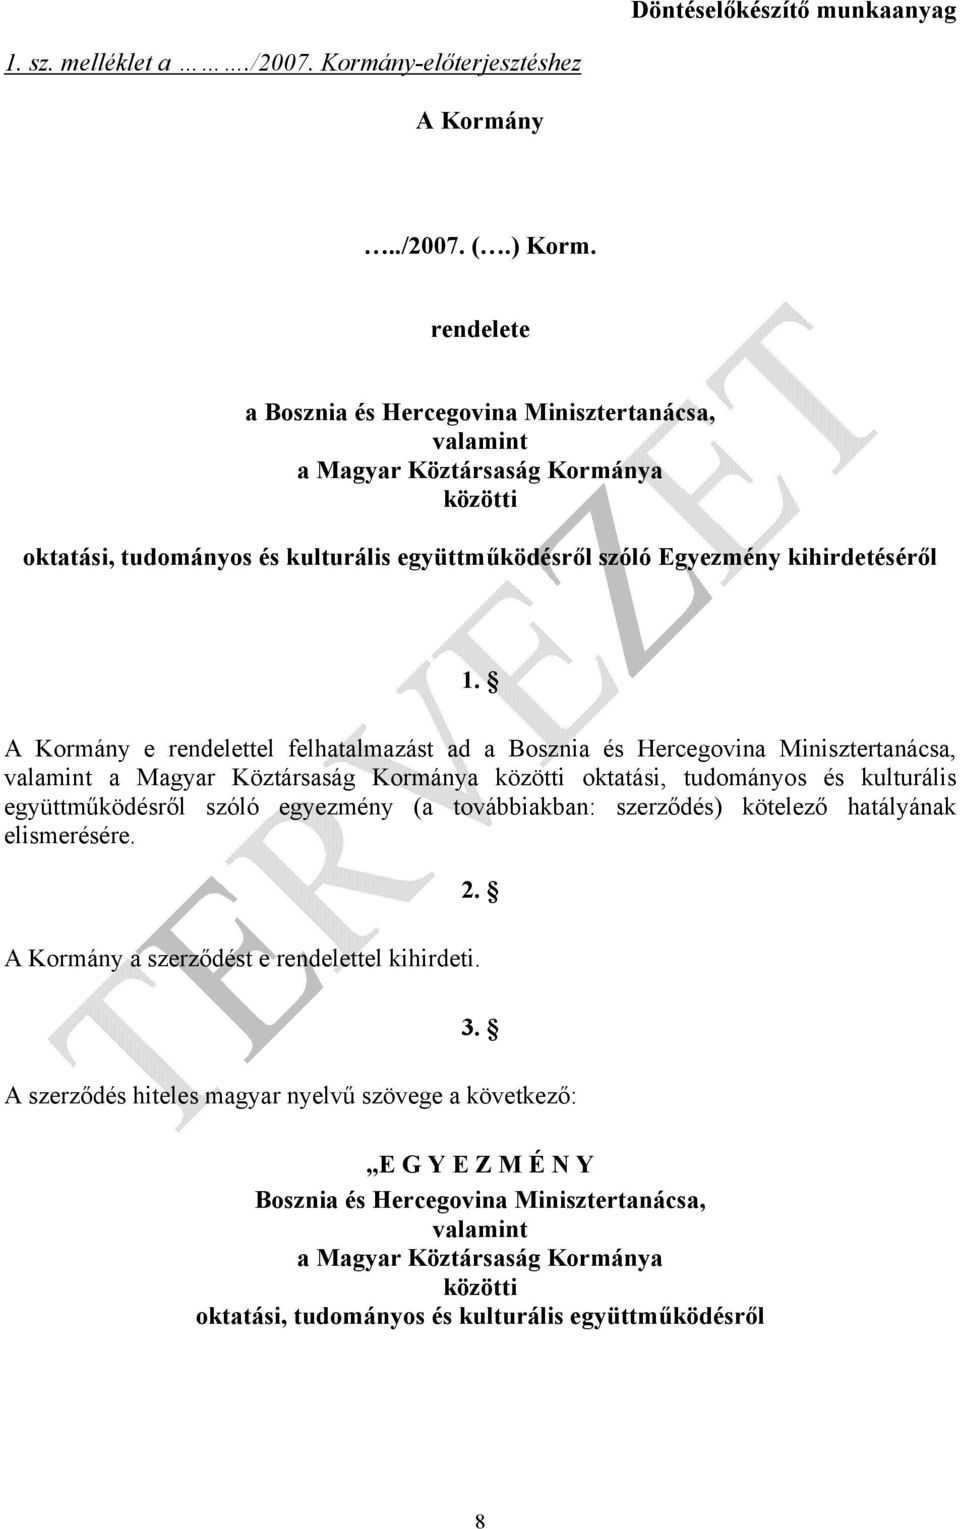 A Kormány e rendelettel felhatalmazást ad a Bosznia és Hercegovina Minisztertanácsa, valamint a Magyar Köztársaság Kormánya közötti oktatási, tudományos és kulturális együttműködésről szóló